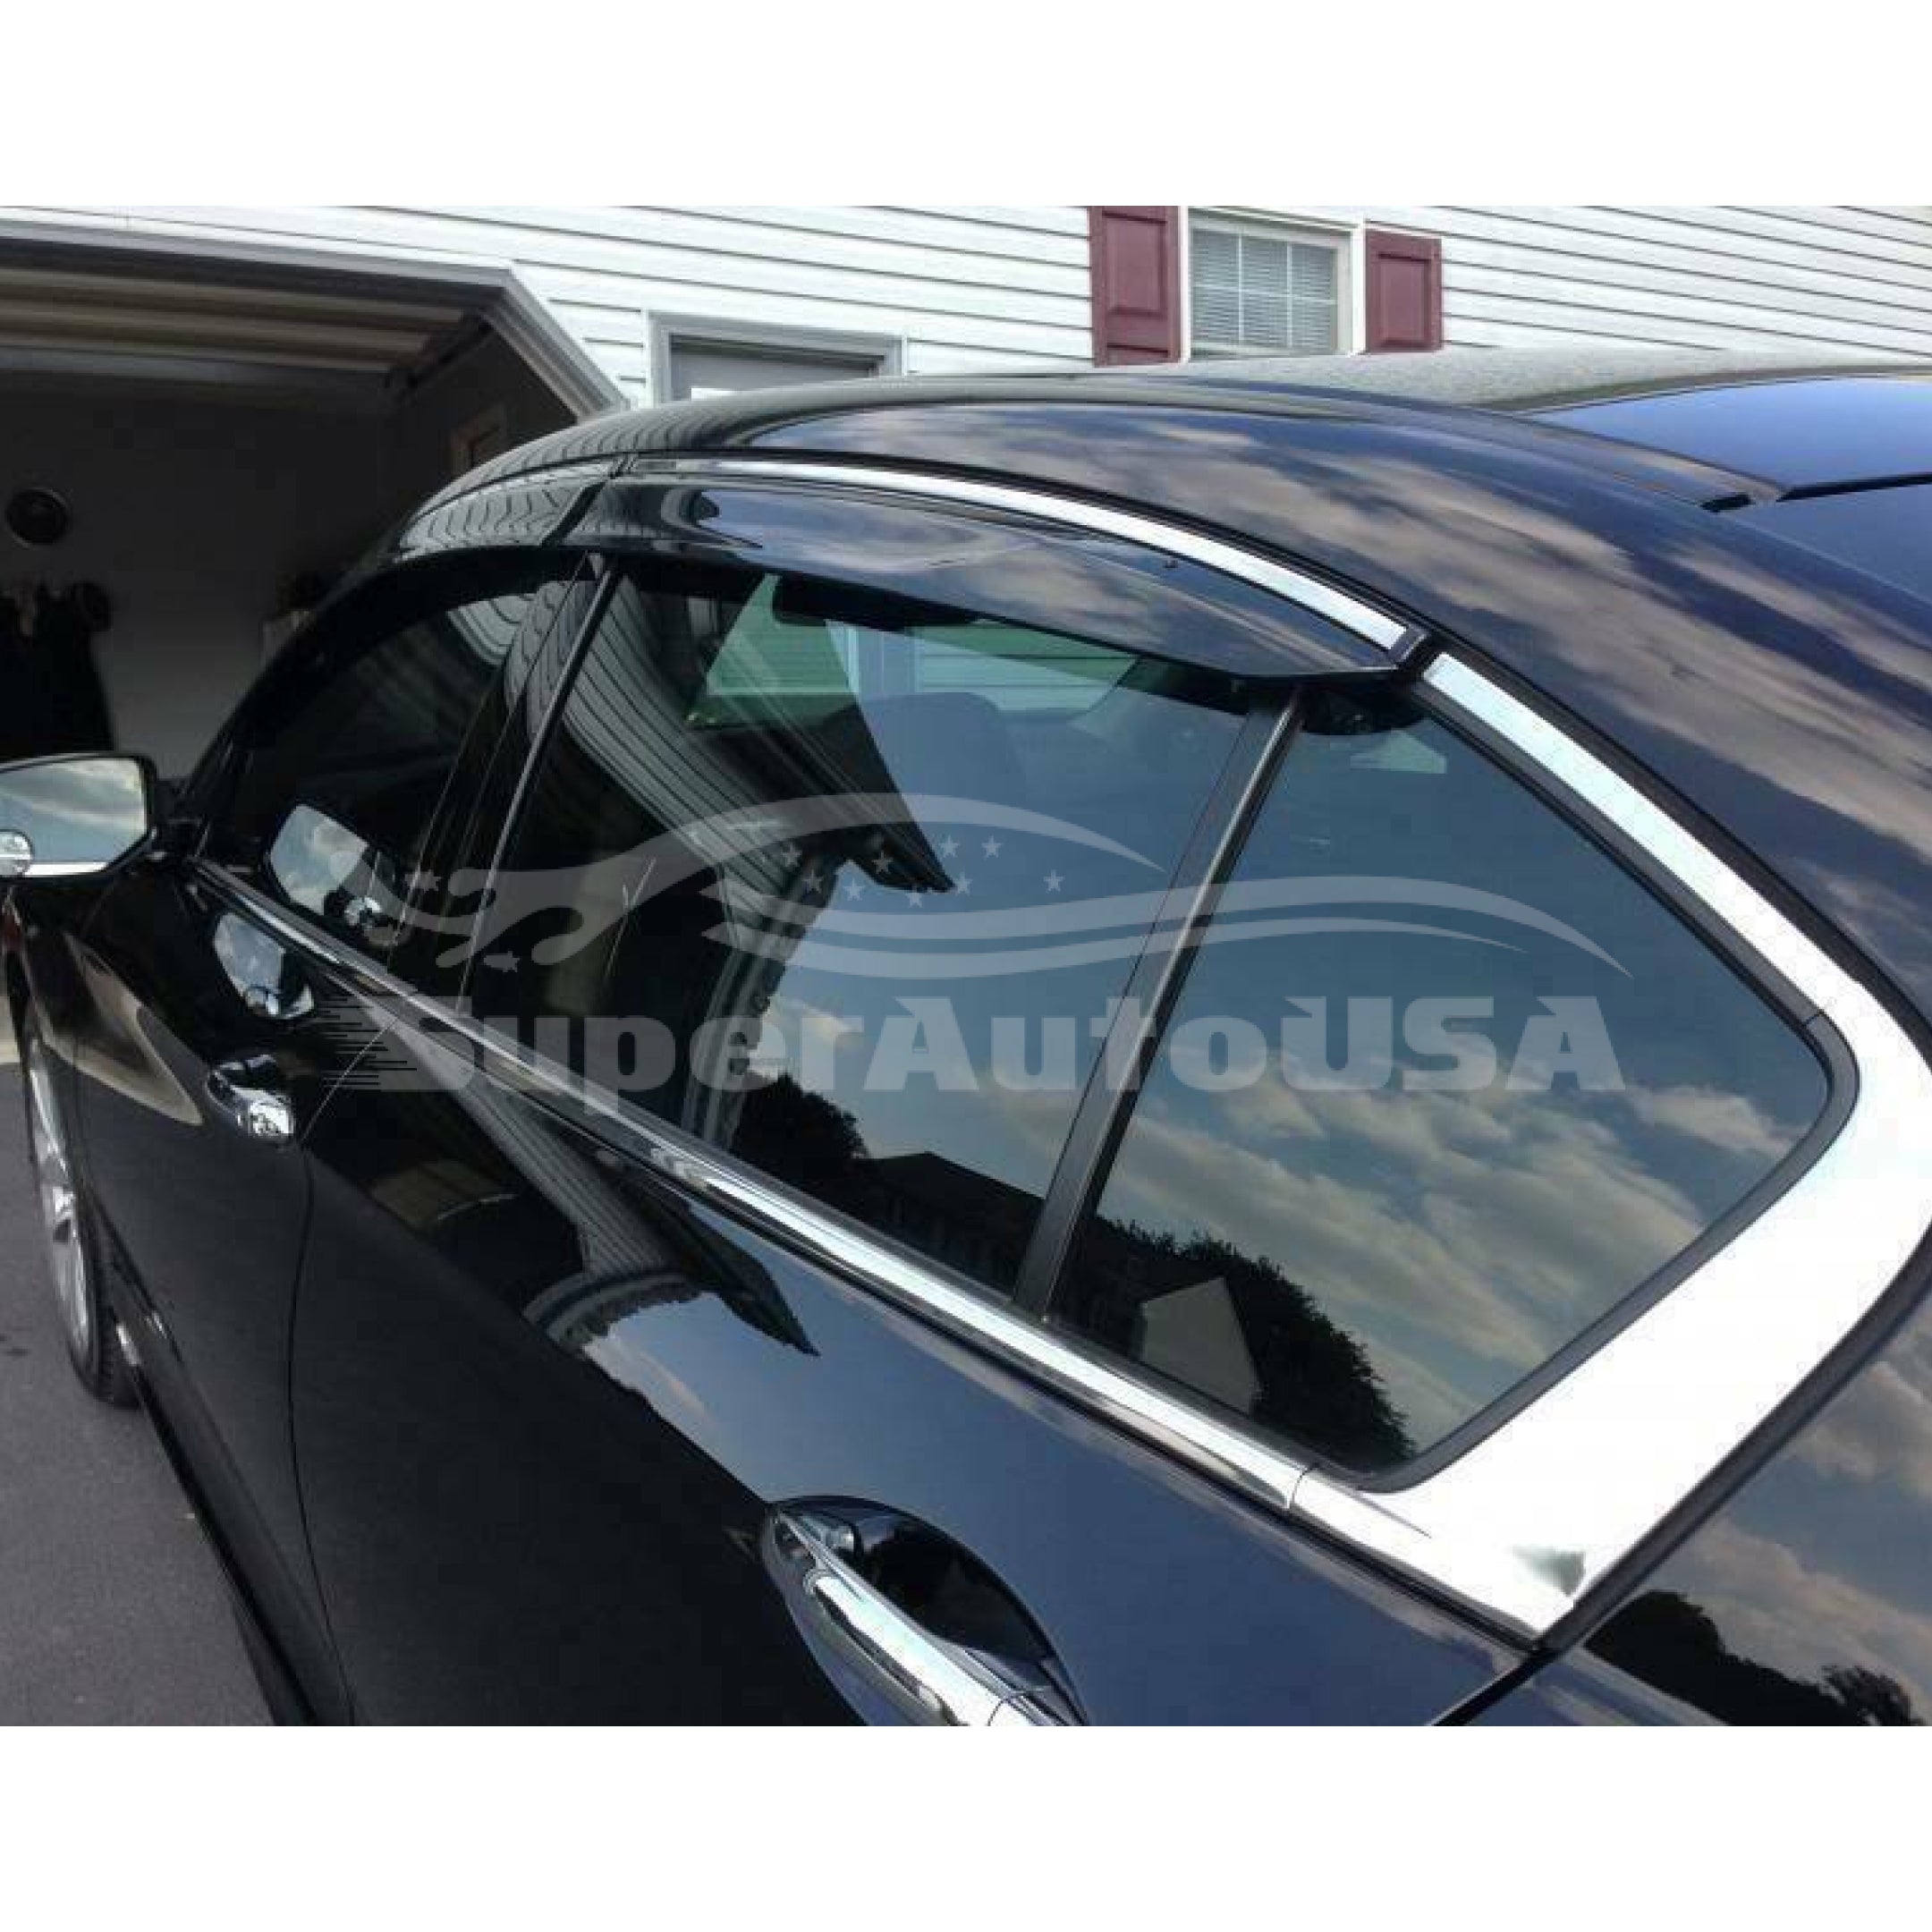 Ajuste 2013-2018 Nissan Altima Clip-On Chrome Trim Vent Window Viseras Rain Sun Wind Guards Shade Deflectors